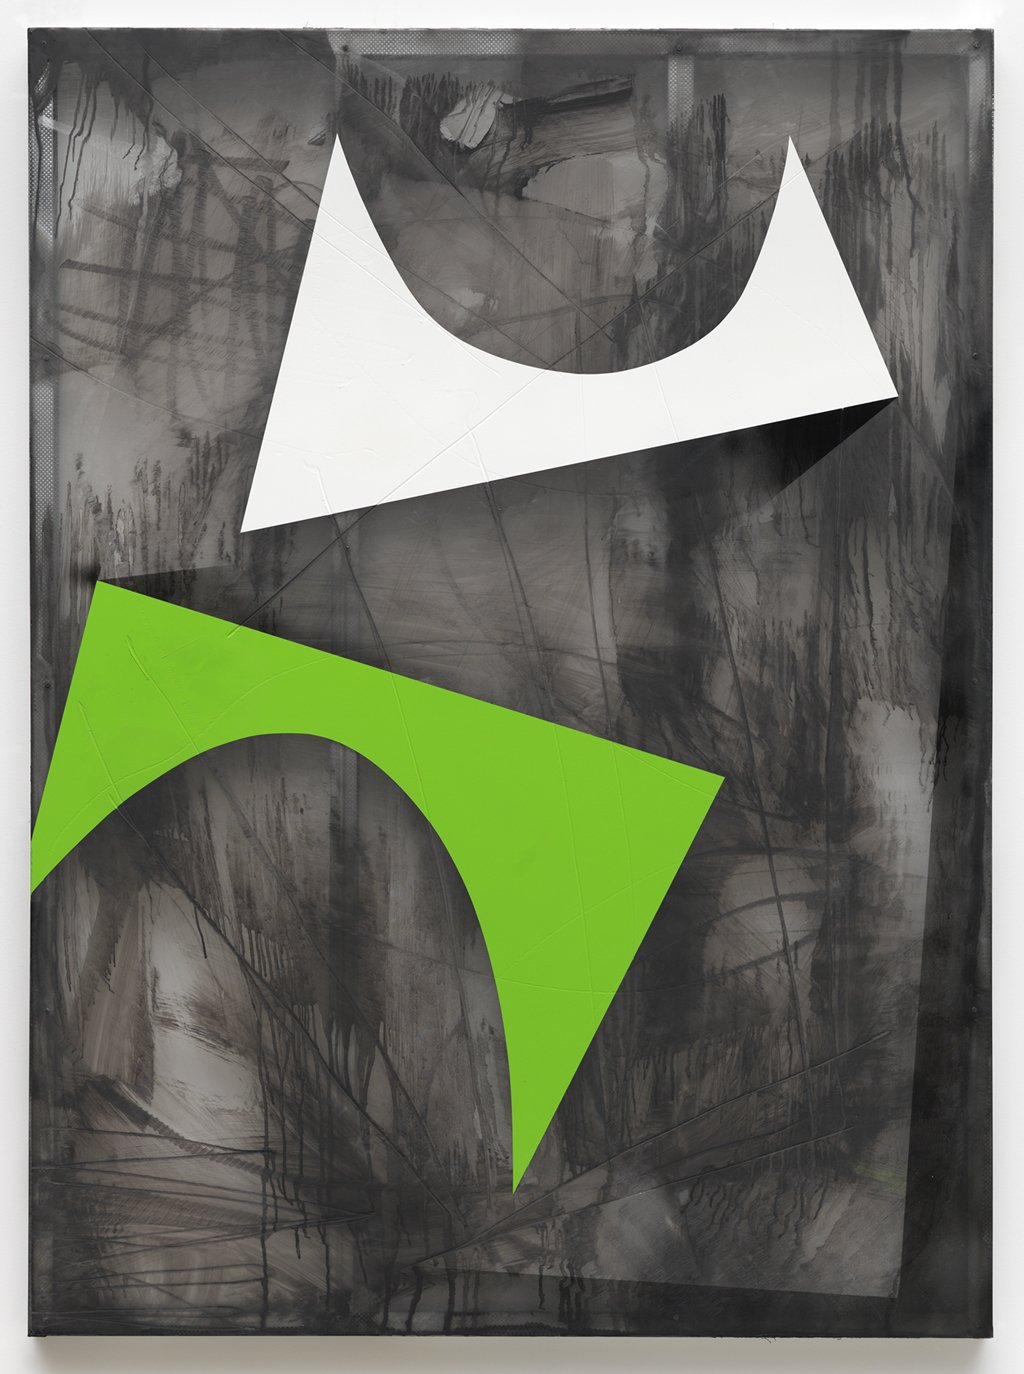  Joe Flemig, Misunderstood, 60" x 44", enamel on polycarbonate, 2014 